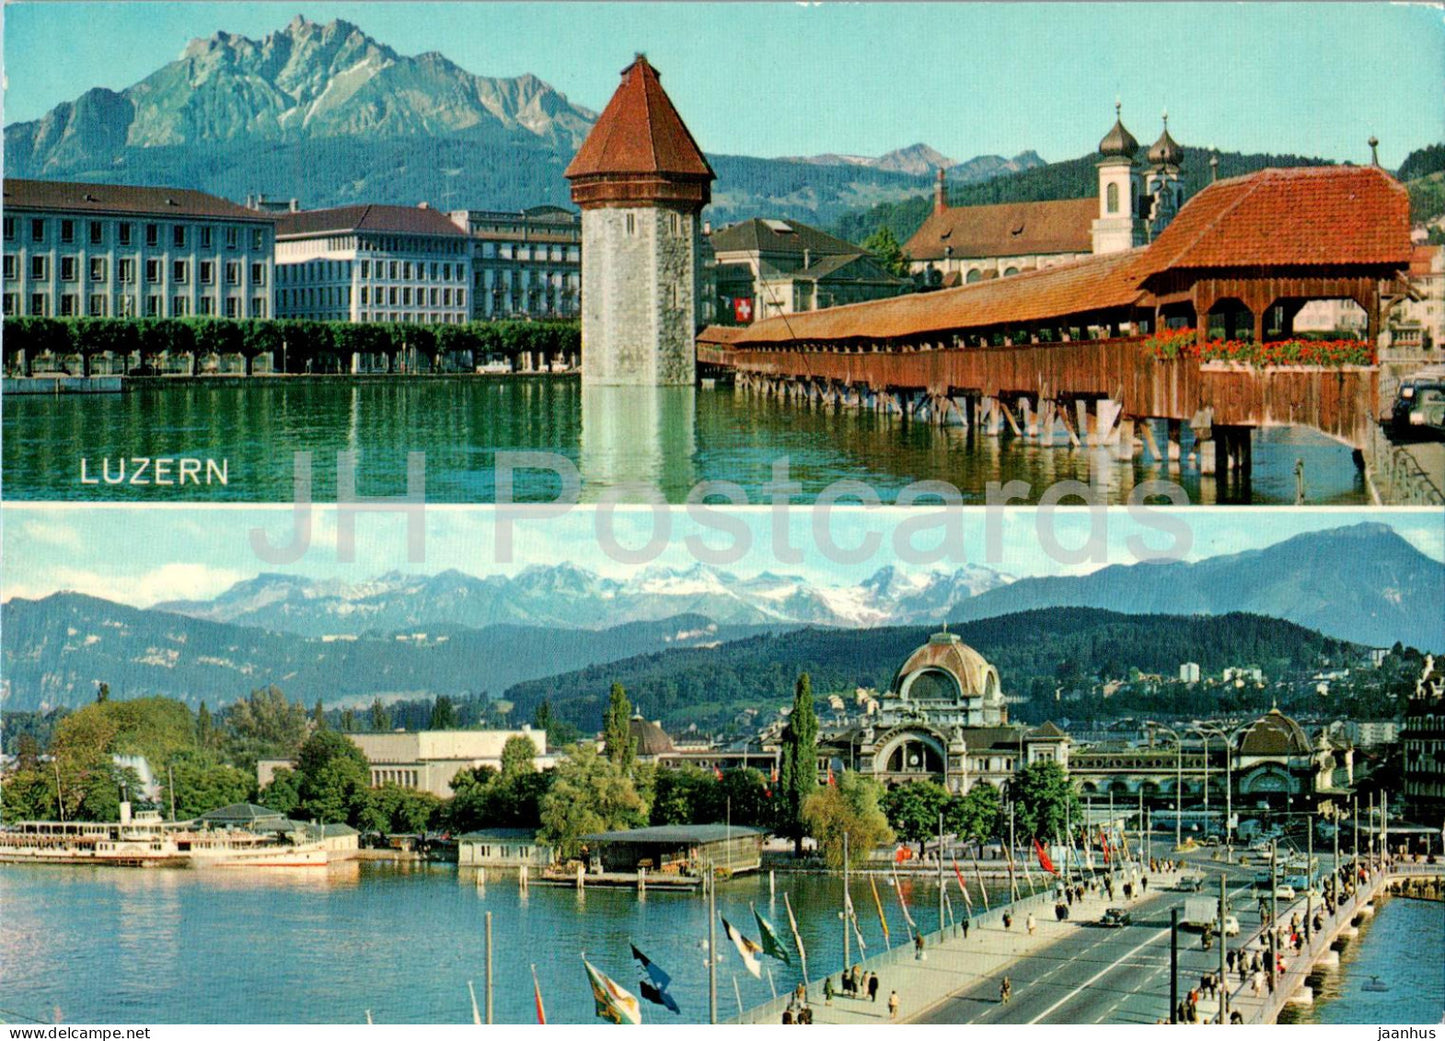 Luzern - Lucerne - bridge - 02481 - Switzerland - unused - JH Postcards